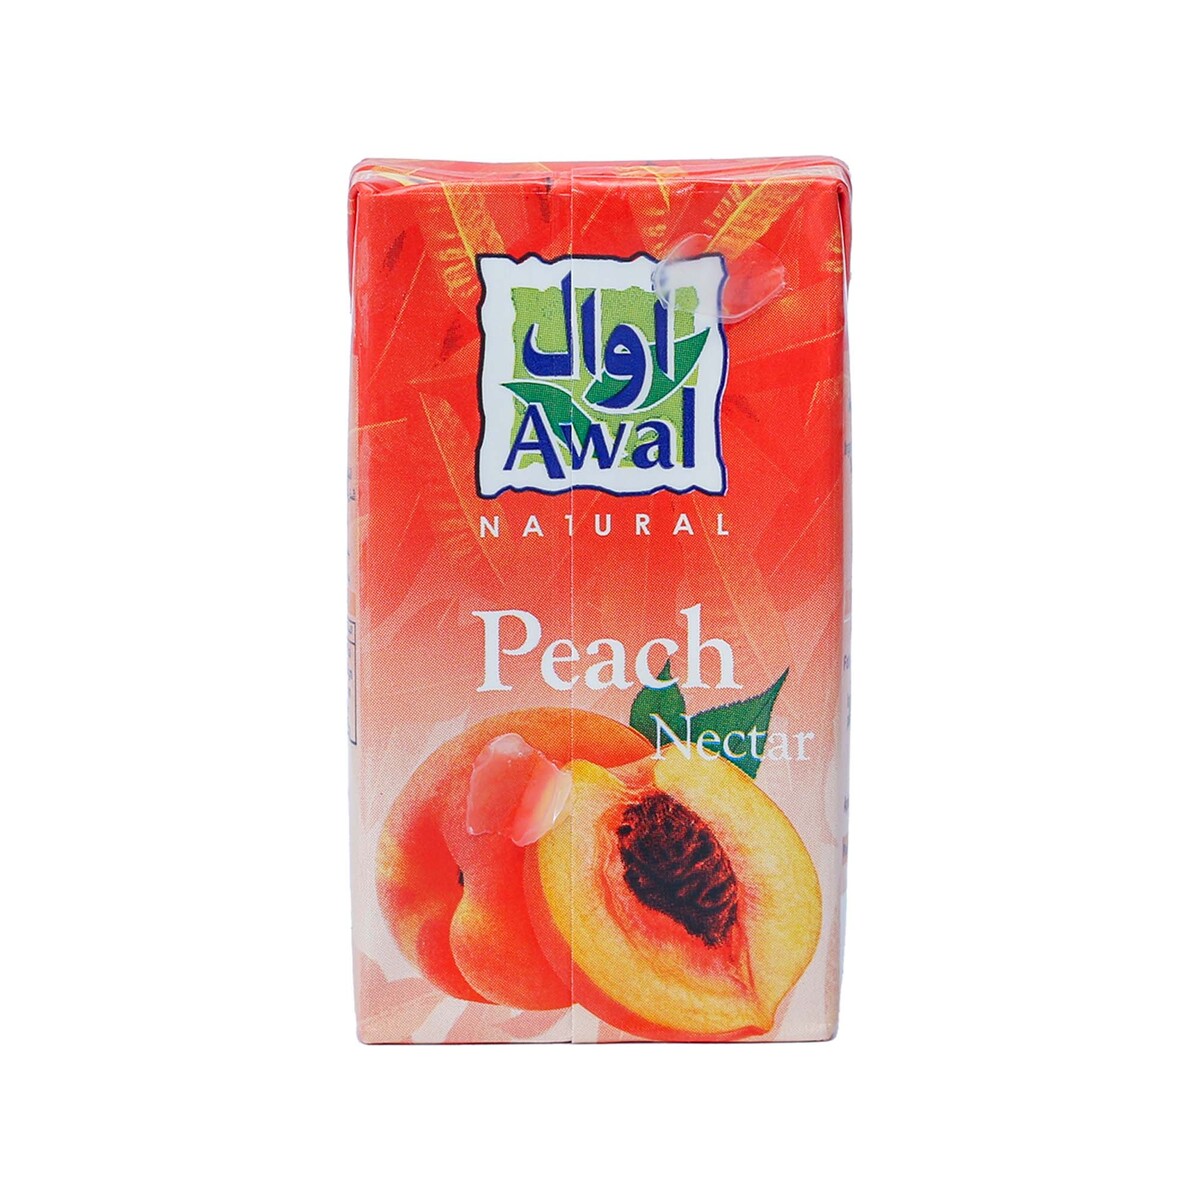 Awal Peach Nectar 6 x 125ml